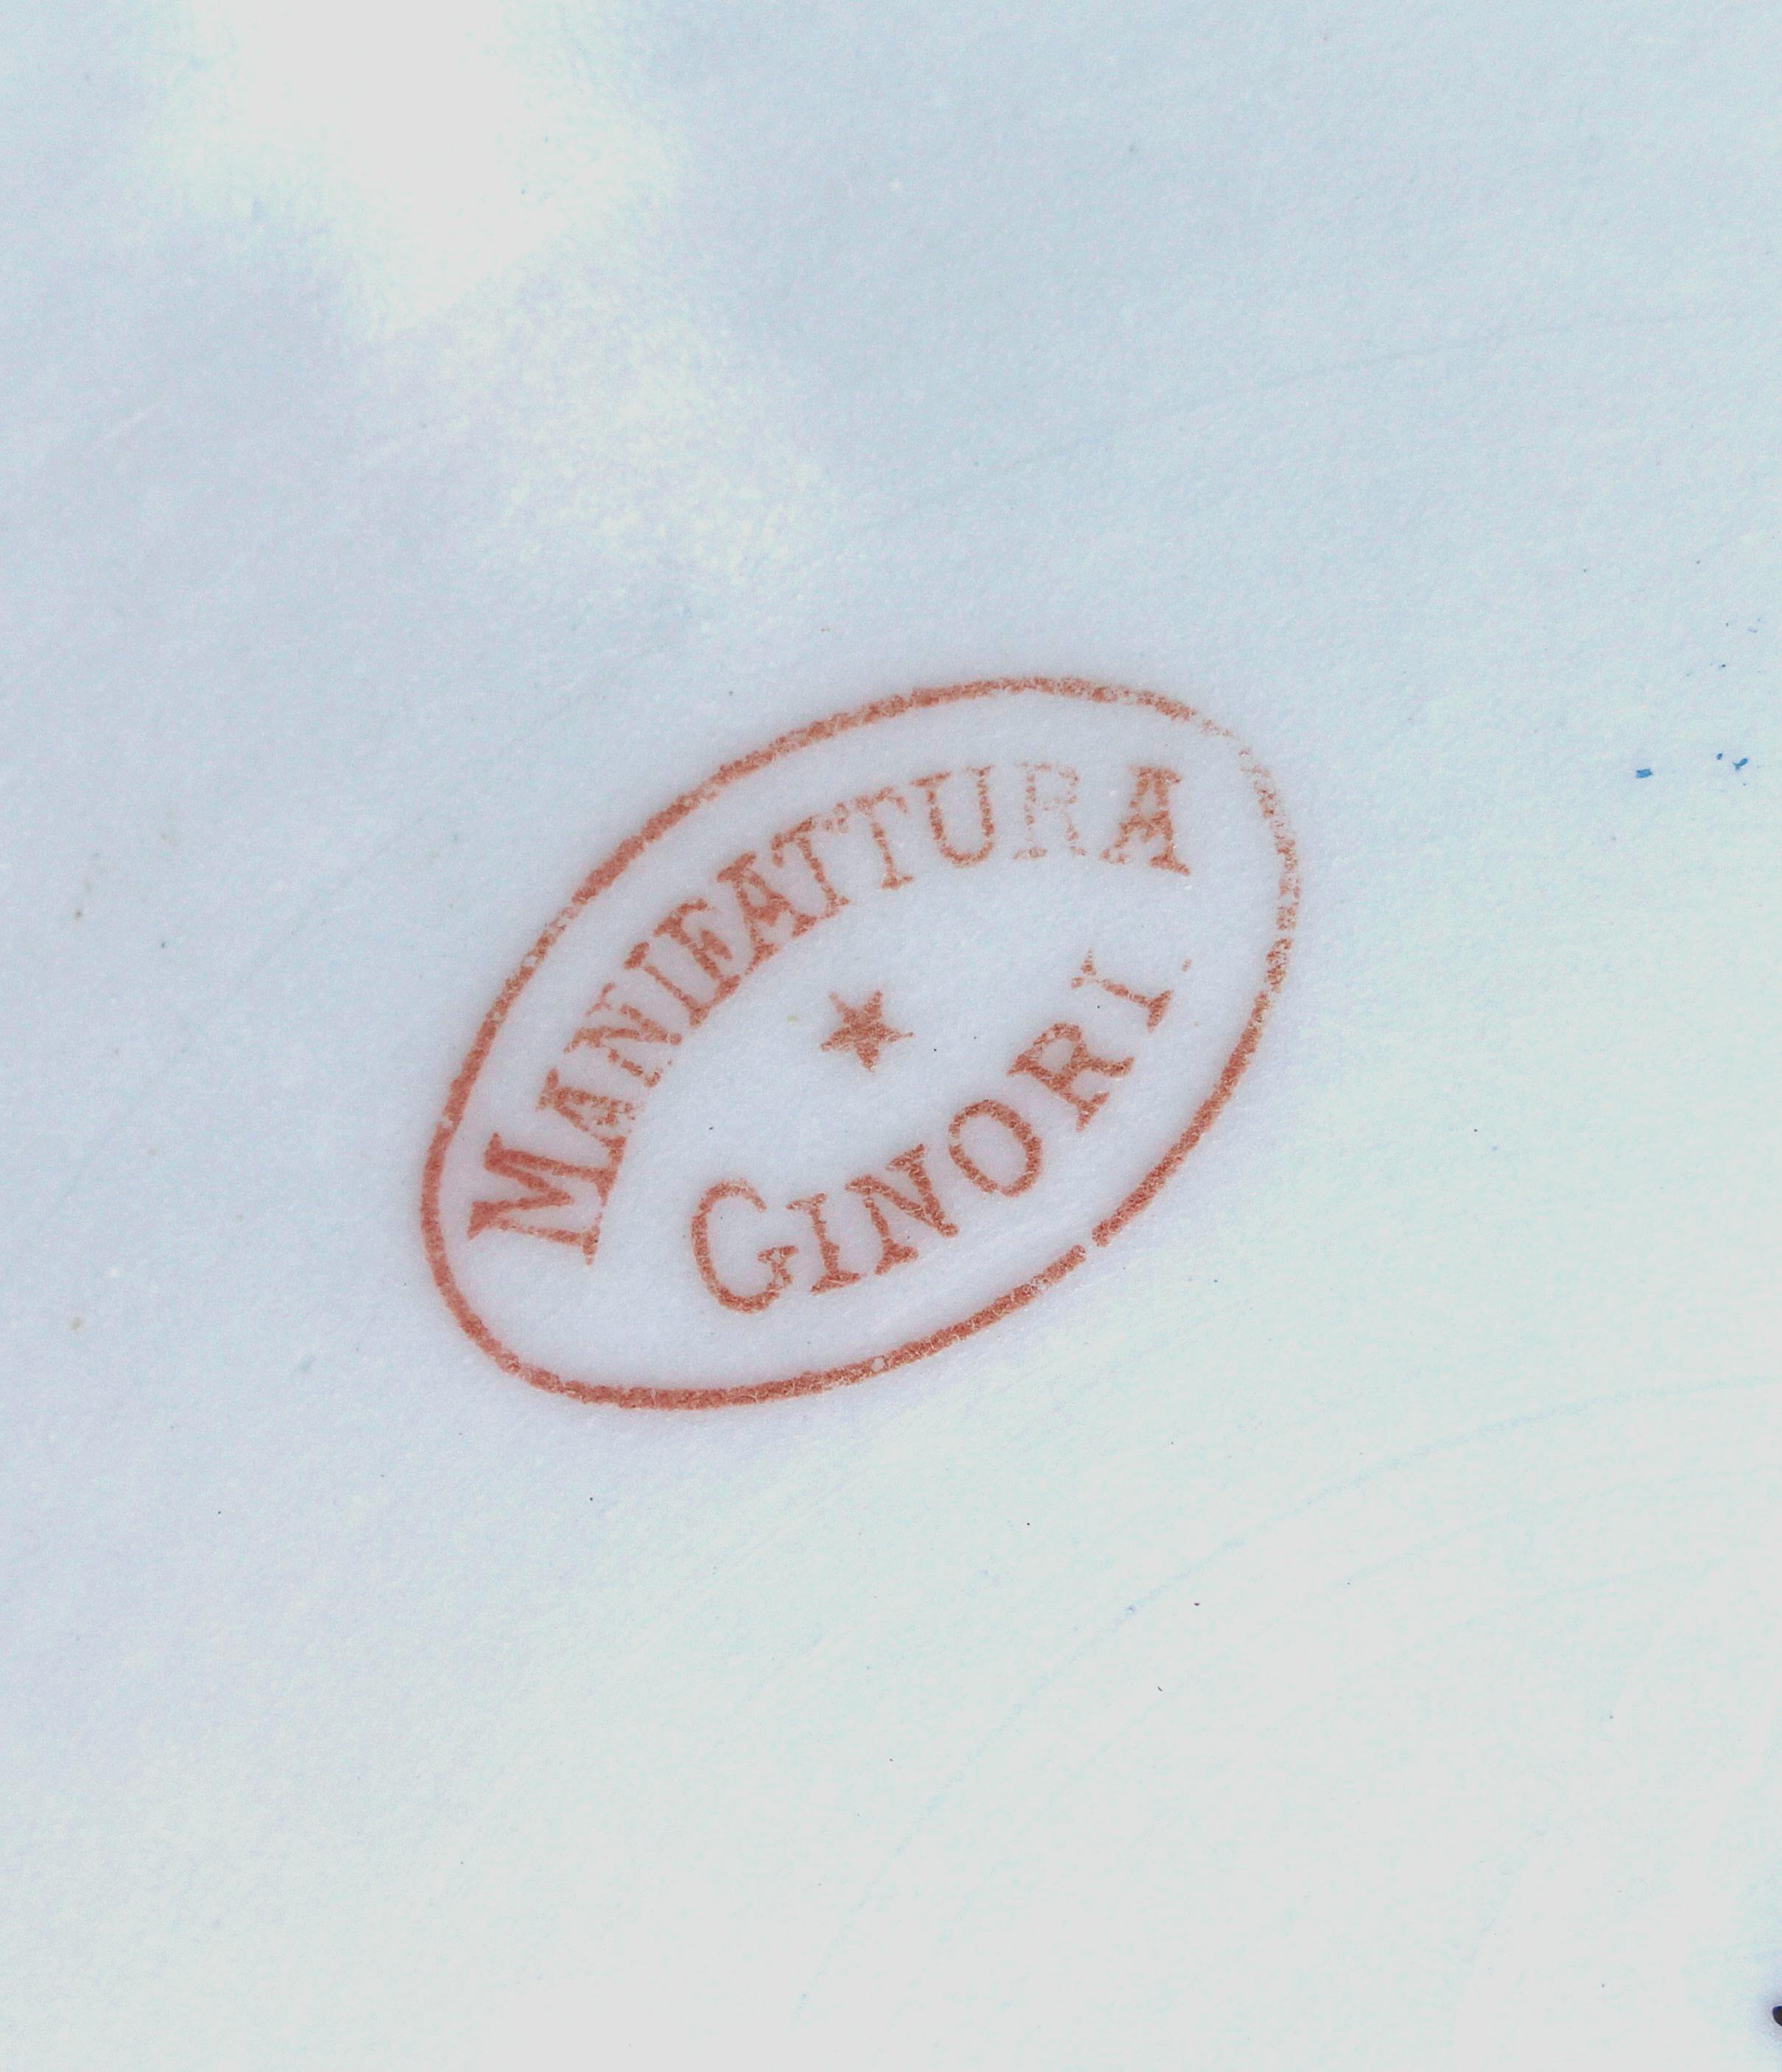 Ovale rosso con scritta Manifattura Ginori in stampatello